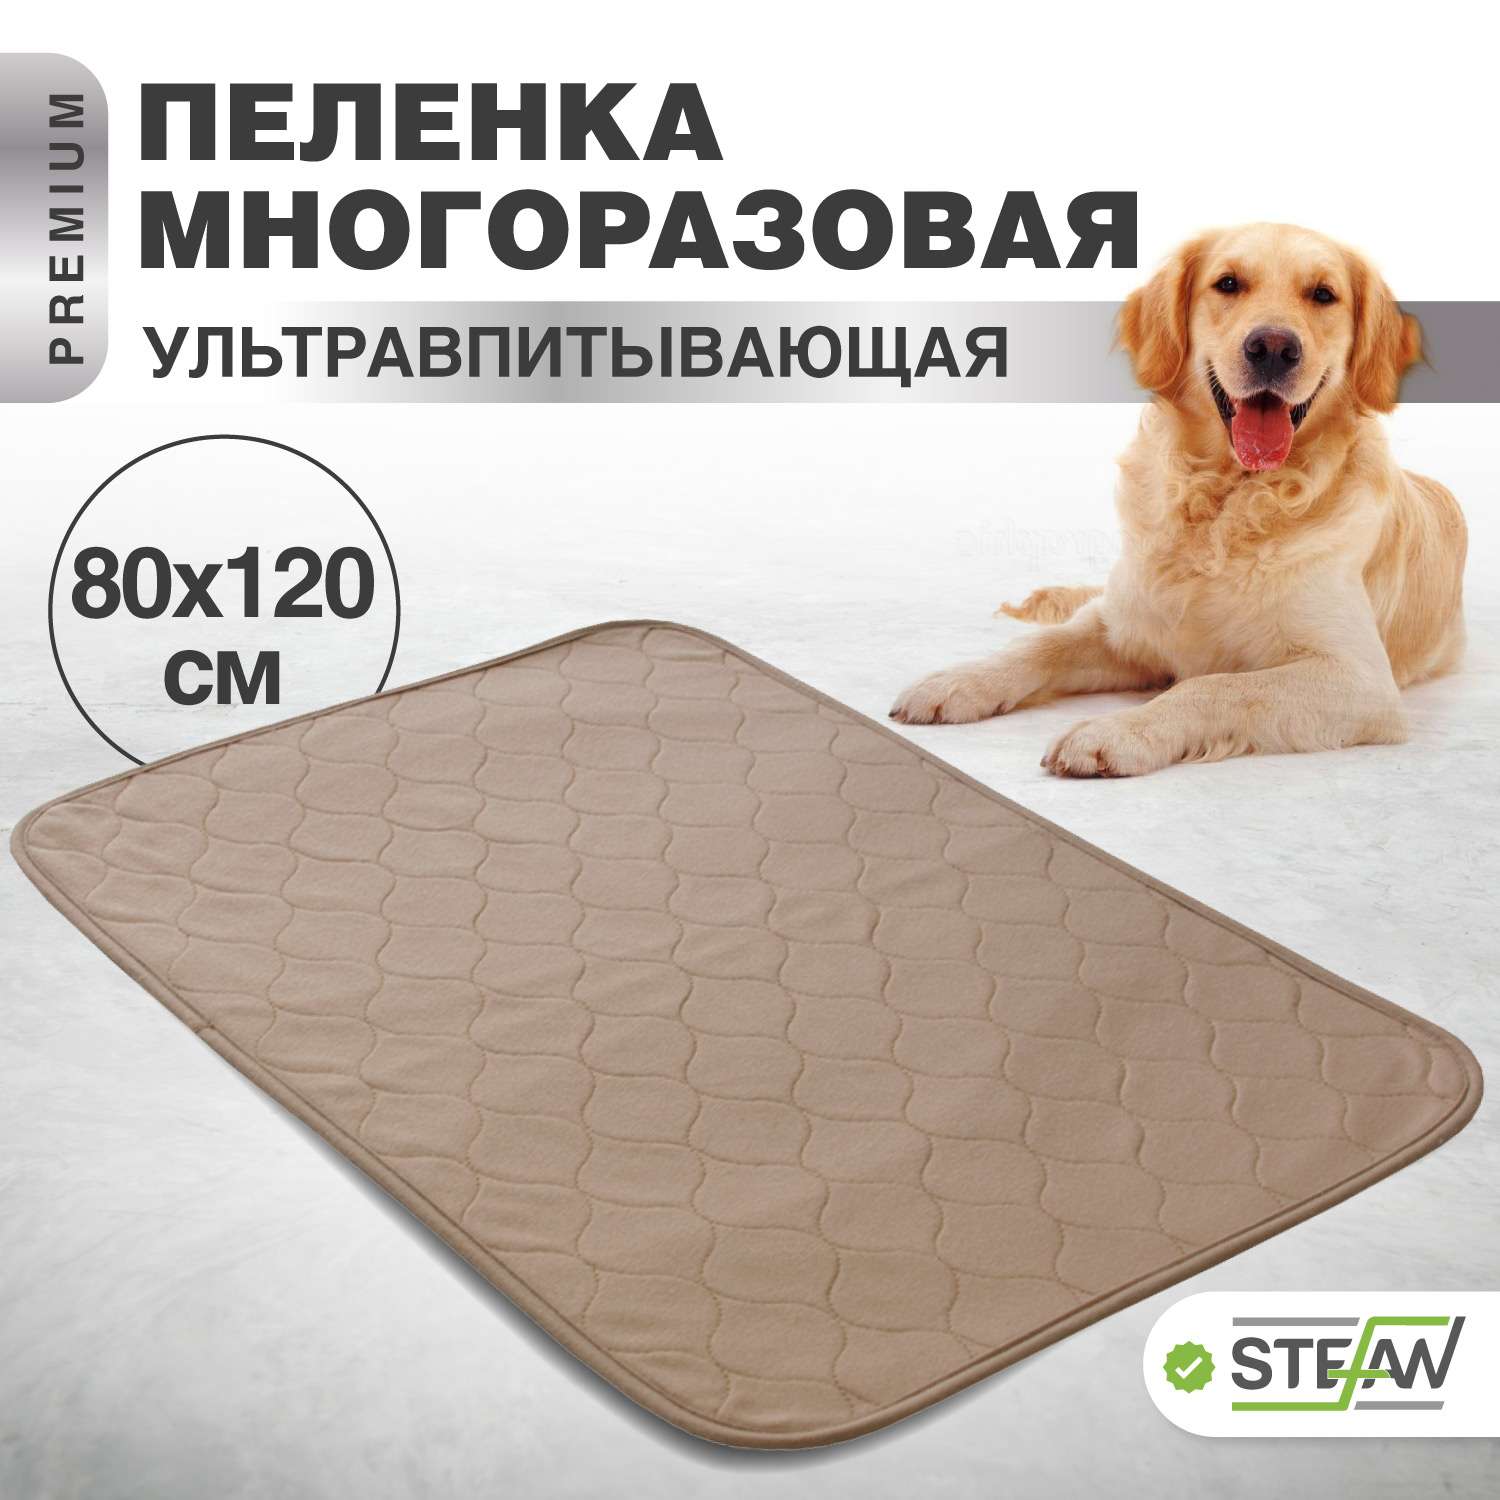 Пеленка для животных Stefan впитывающая многоразовая коричневая однотонная 80х120 см - фото 1